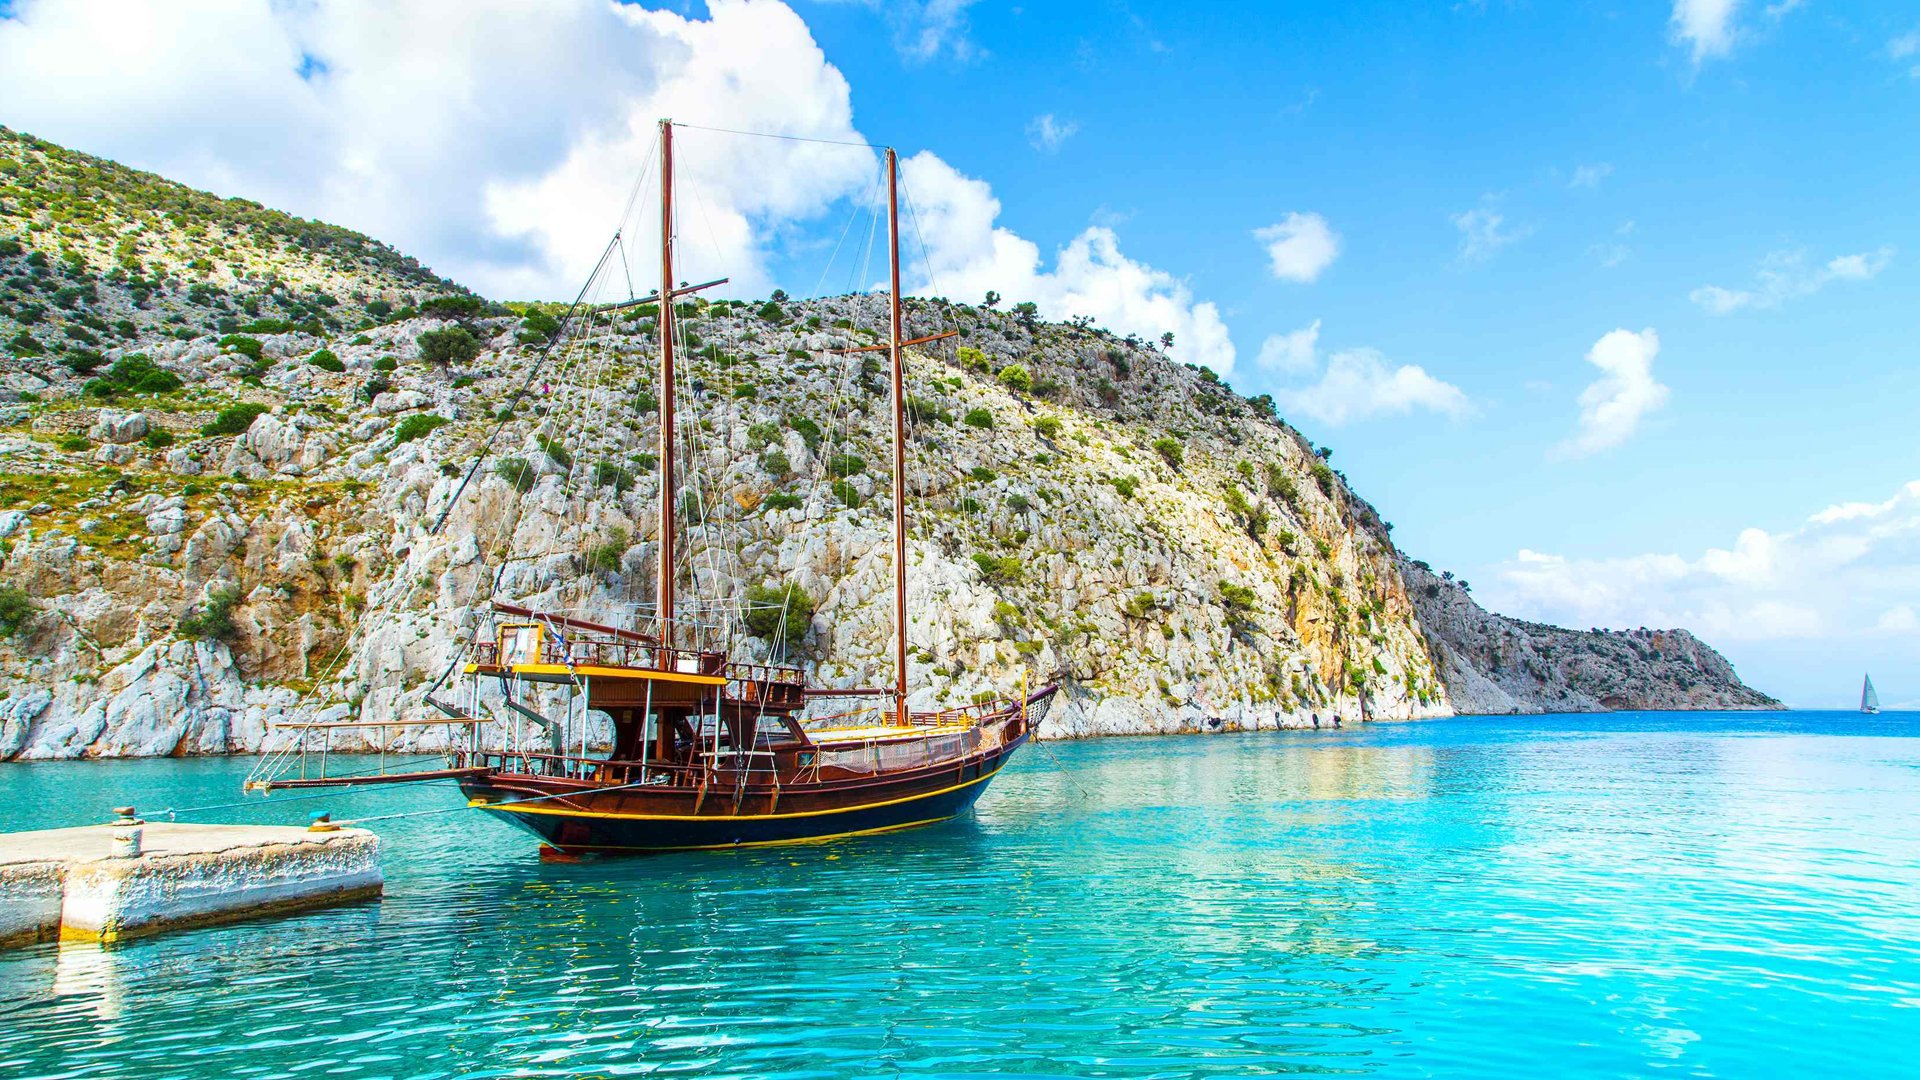 Fethiye Islands Cruise Tour Tpt Tours Istanbul